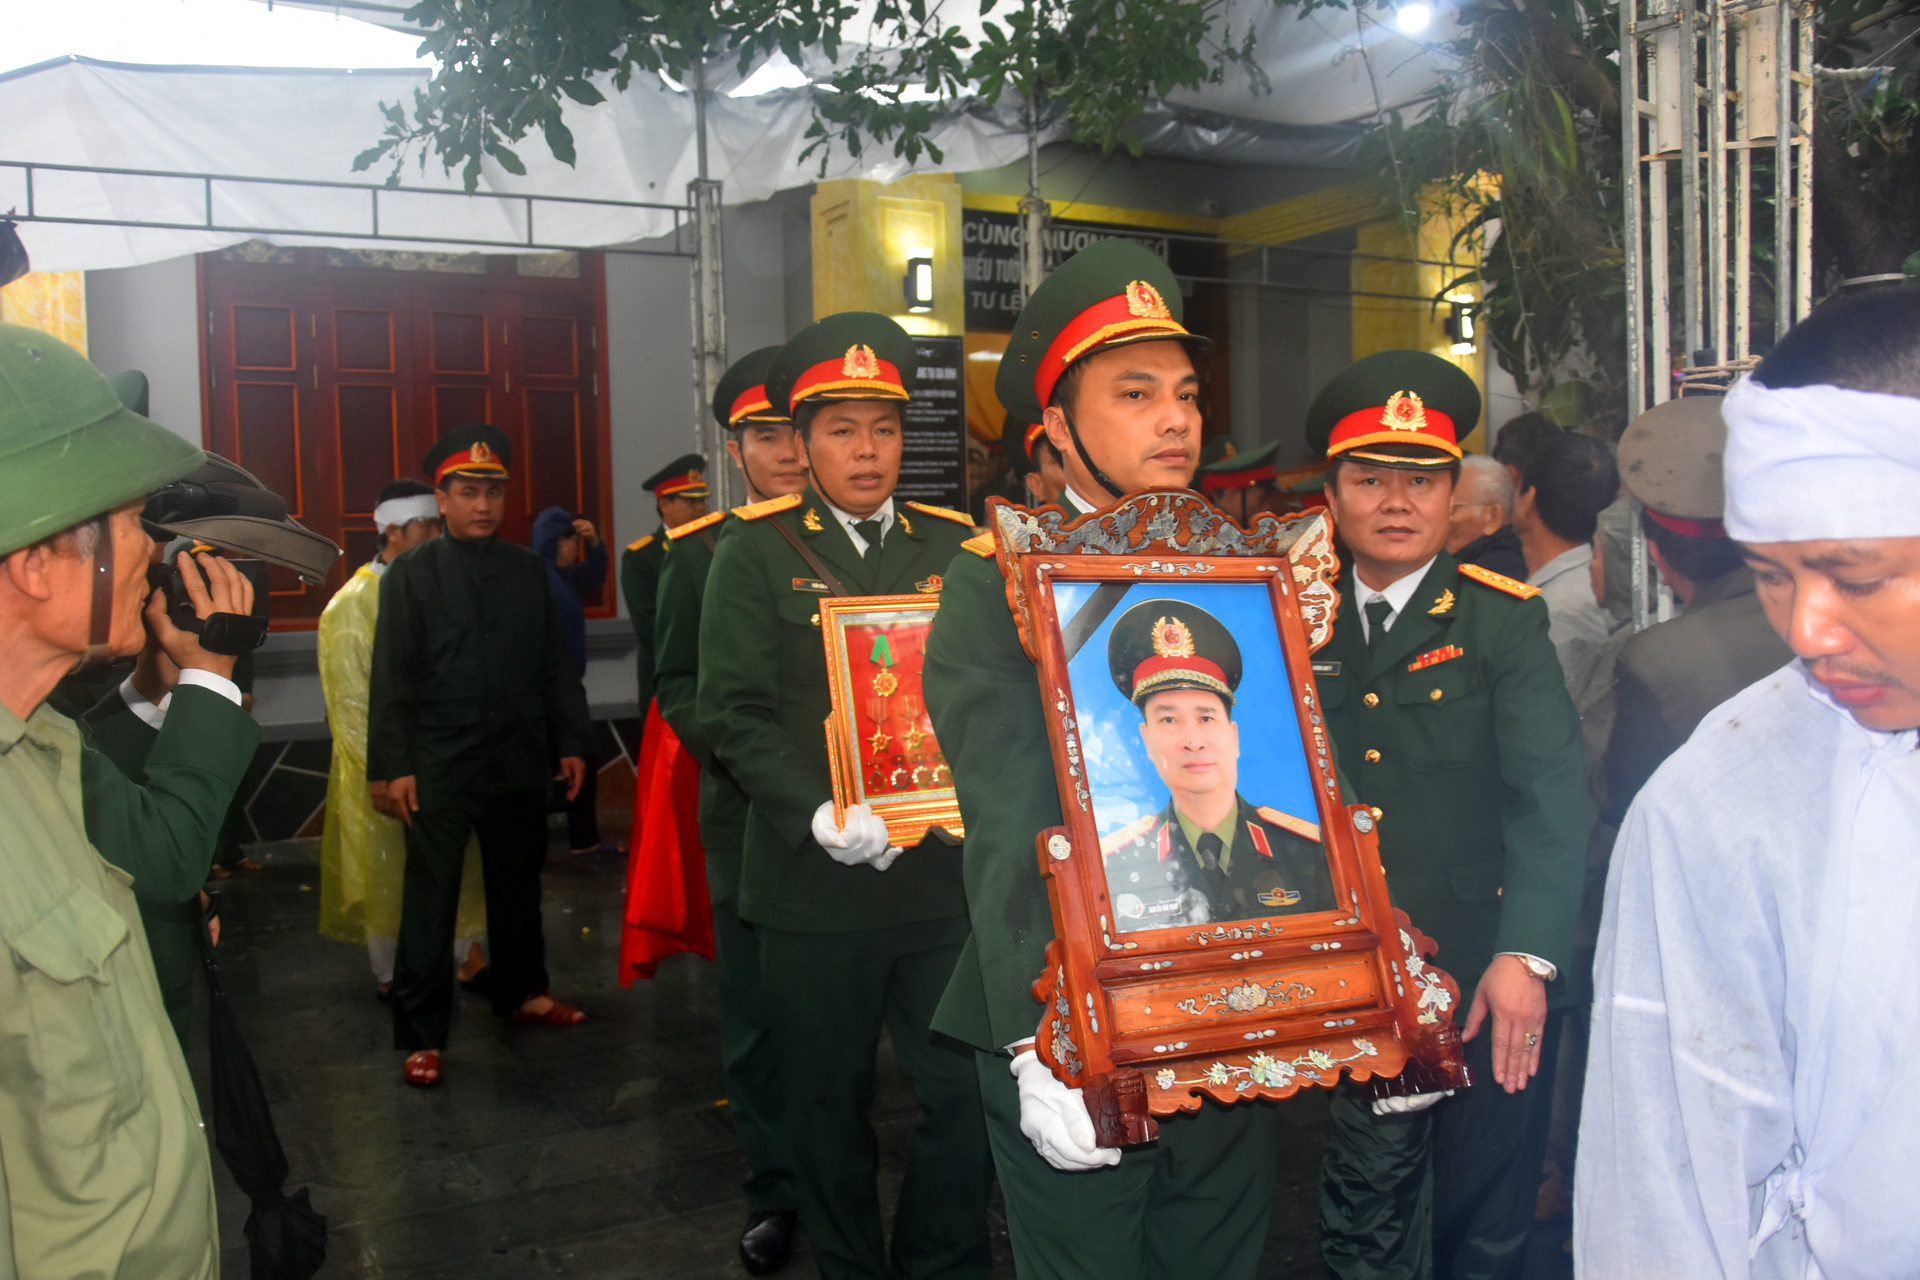 Đoàn người lặng lẽ dưới mưa, tiễn đưa Thiếu tướng Nguyễn Văn Man về đất mẹ - 6